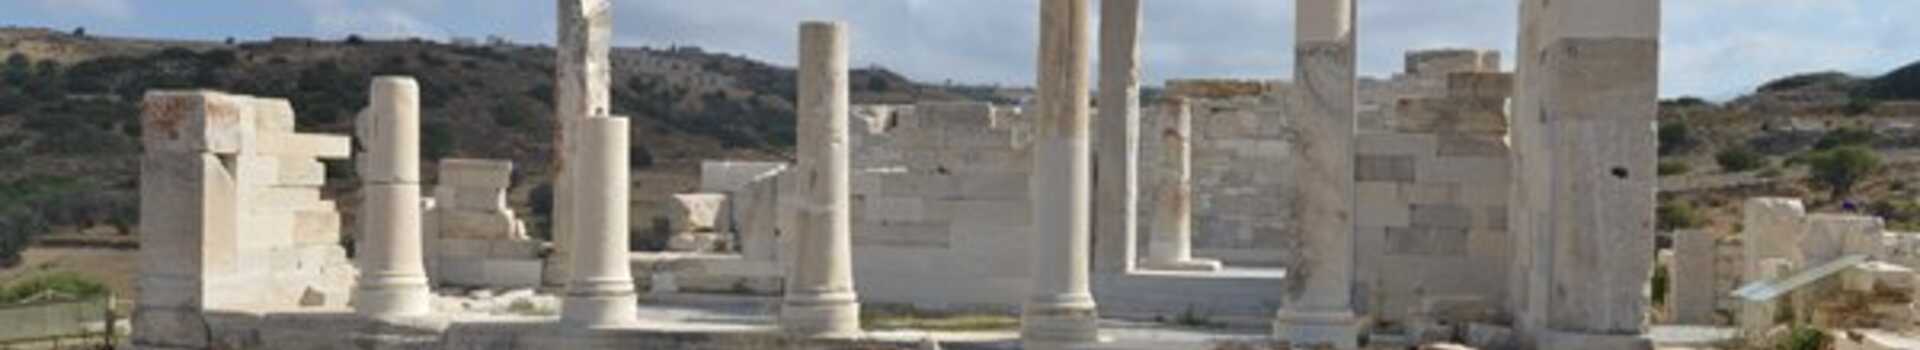 Řecko, Naxos, Antické stavení Demeter (2)